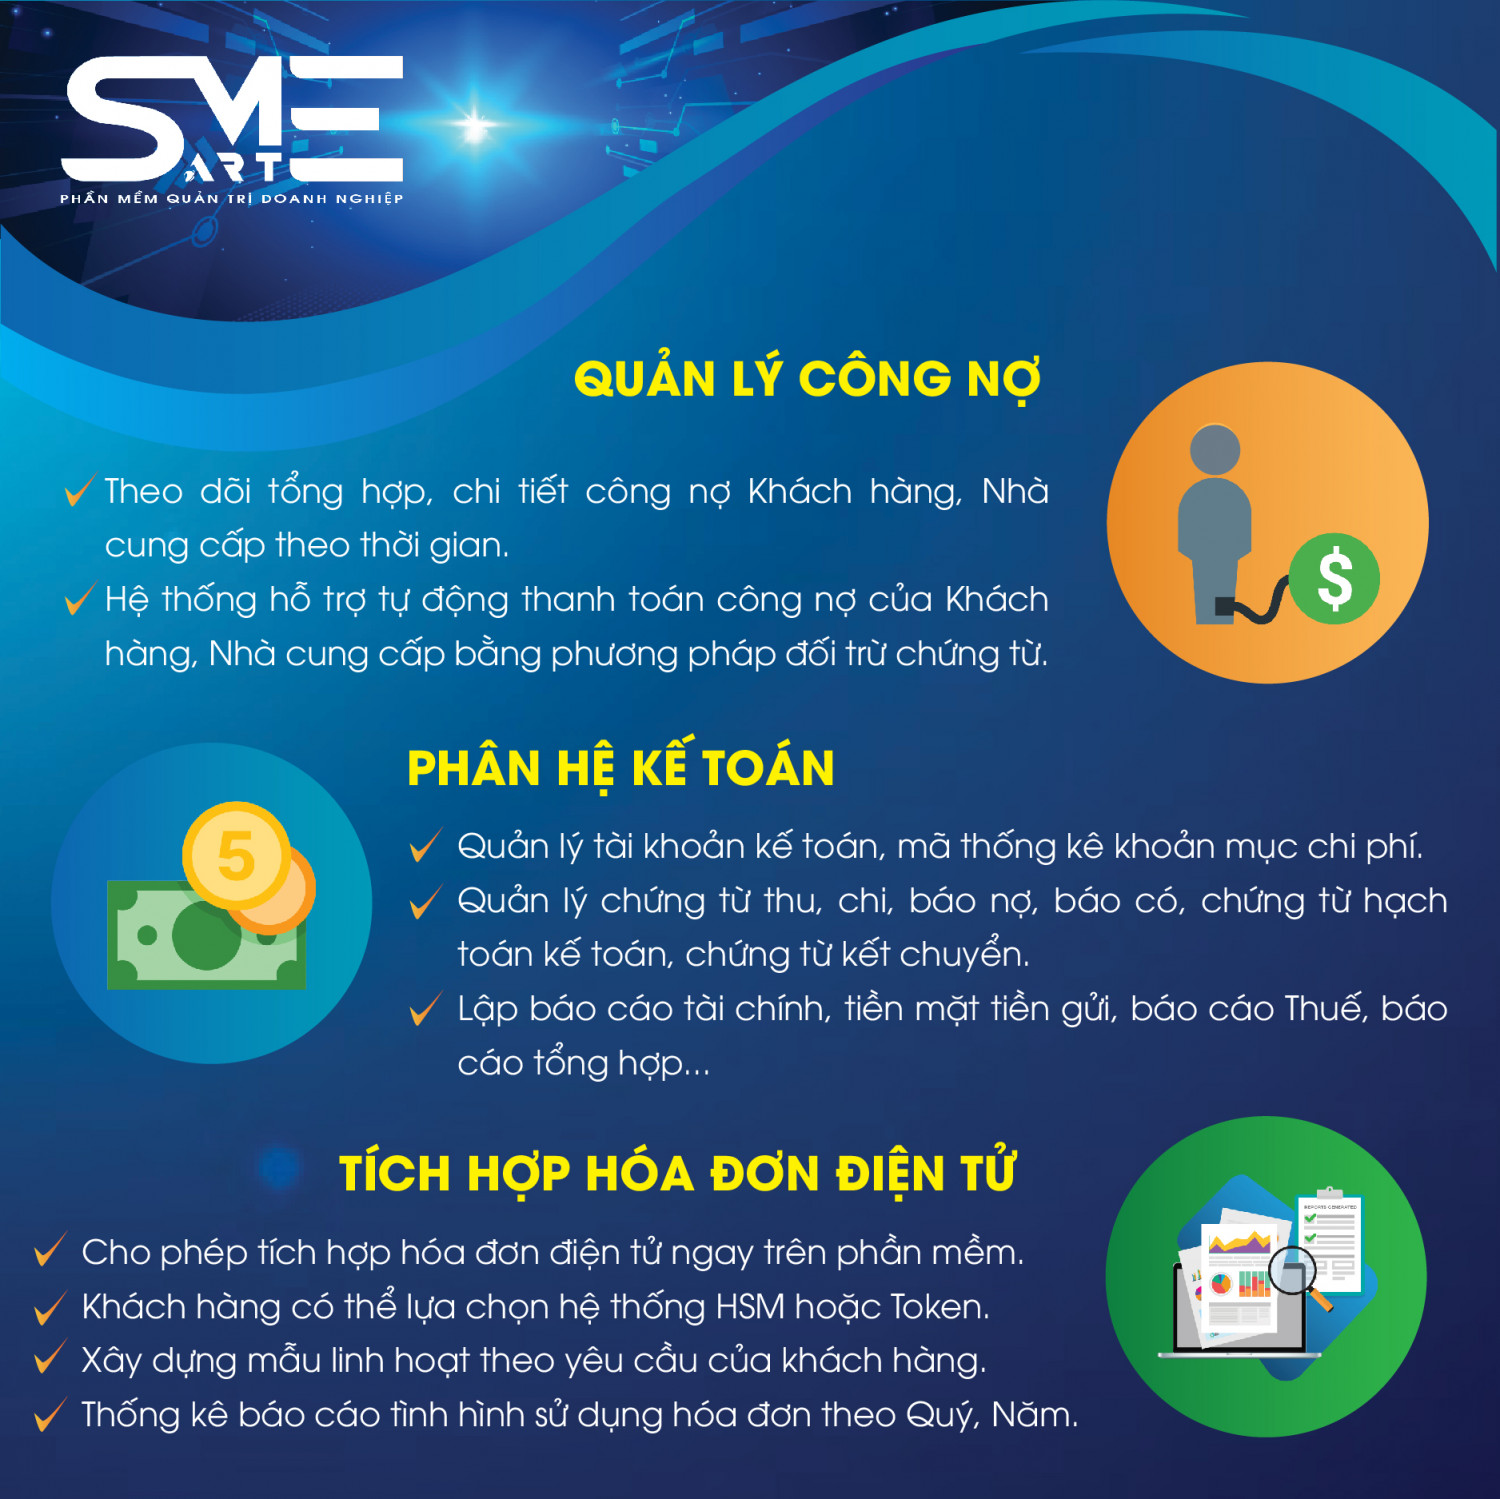 Phần mềm quản lý bán hàng (SME - SALES)